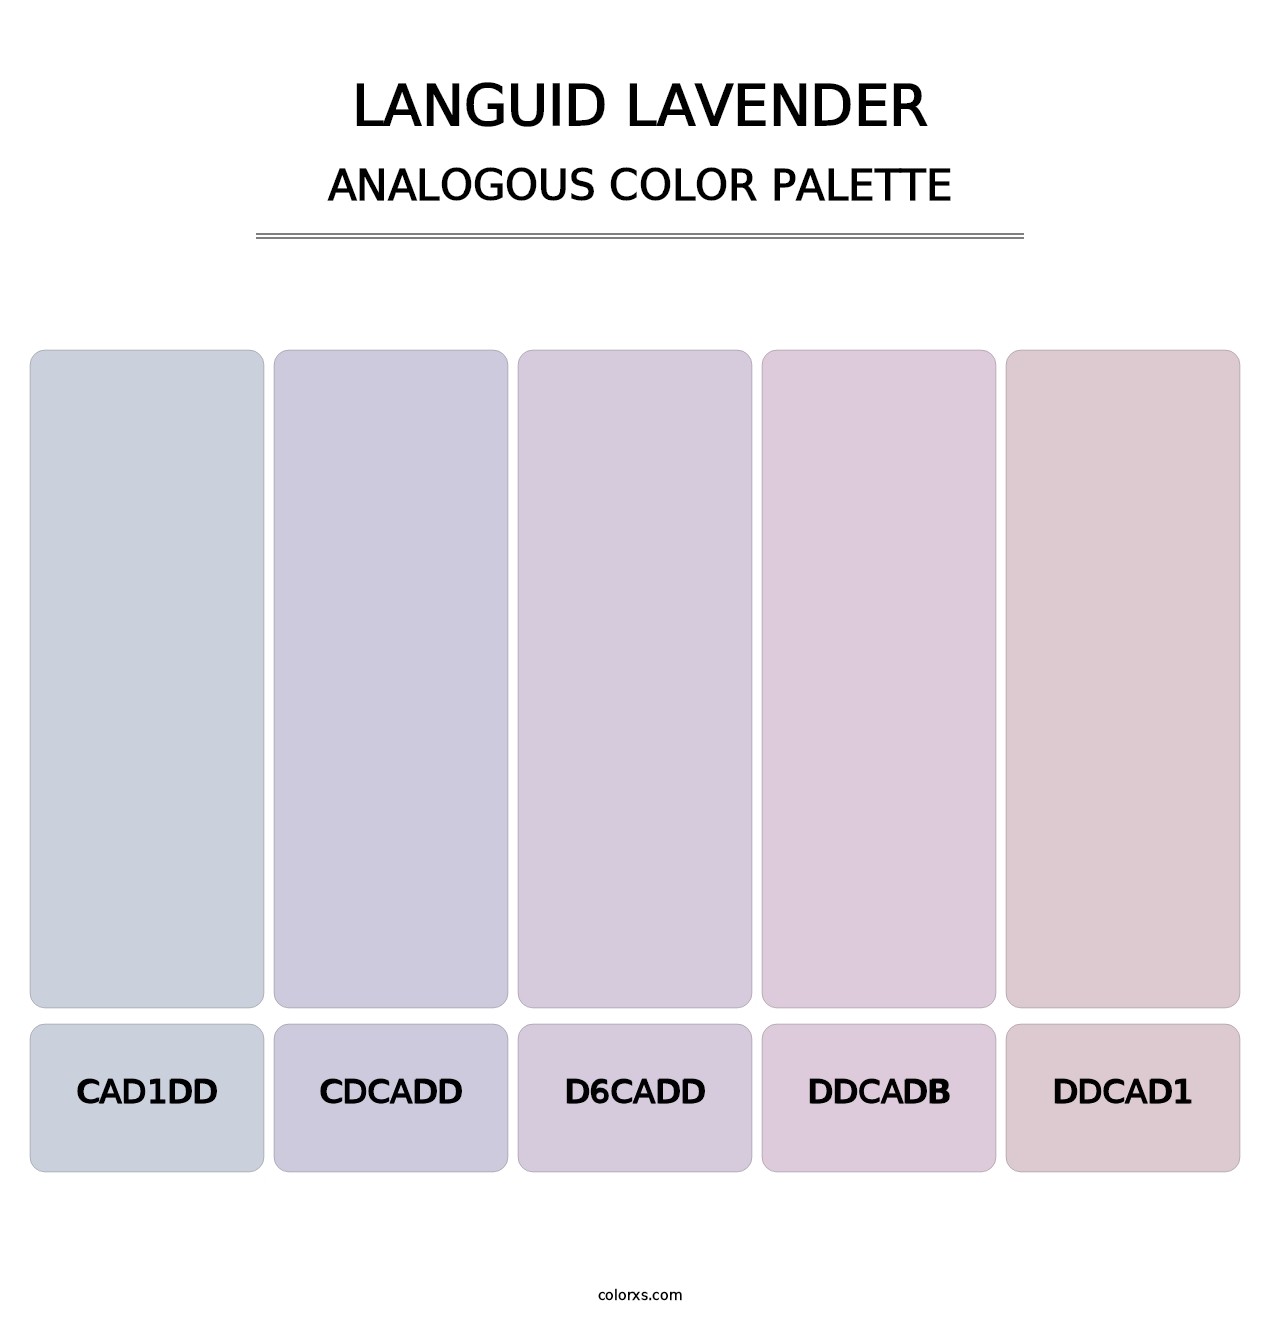 Languid Lavender - Analogous Color Palette